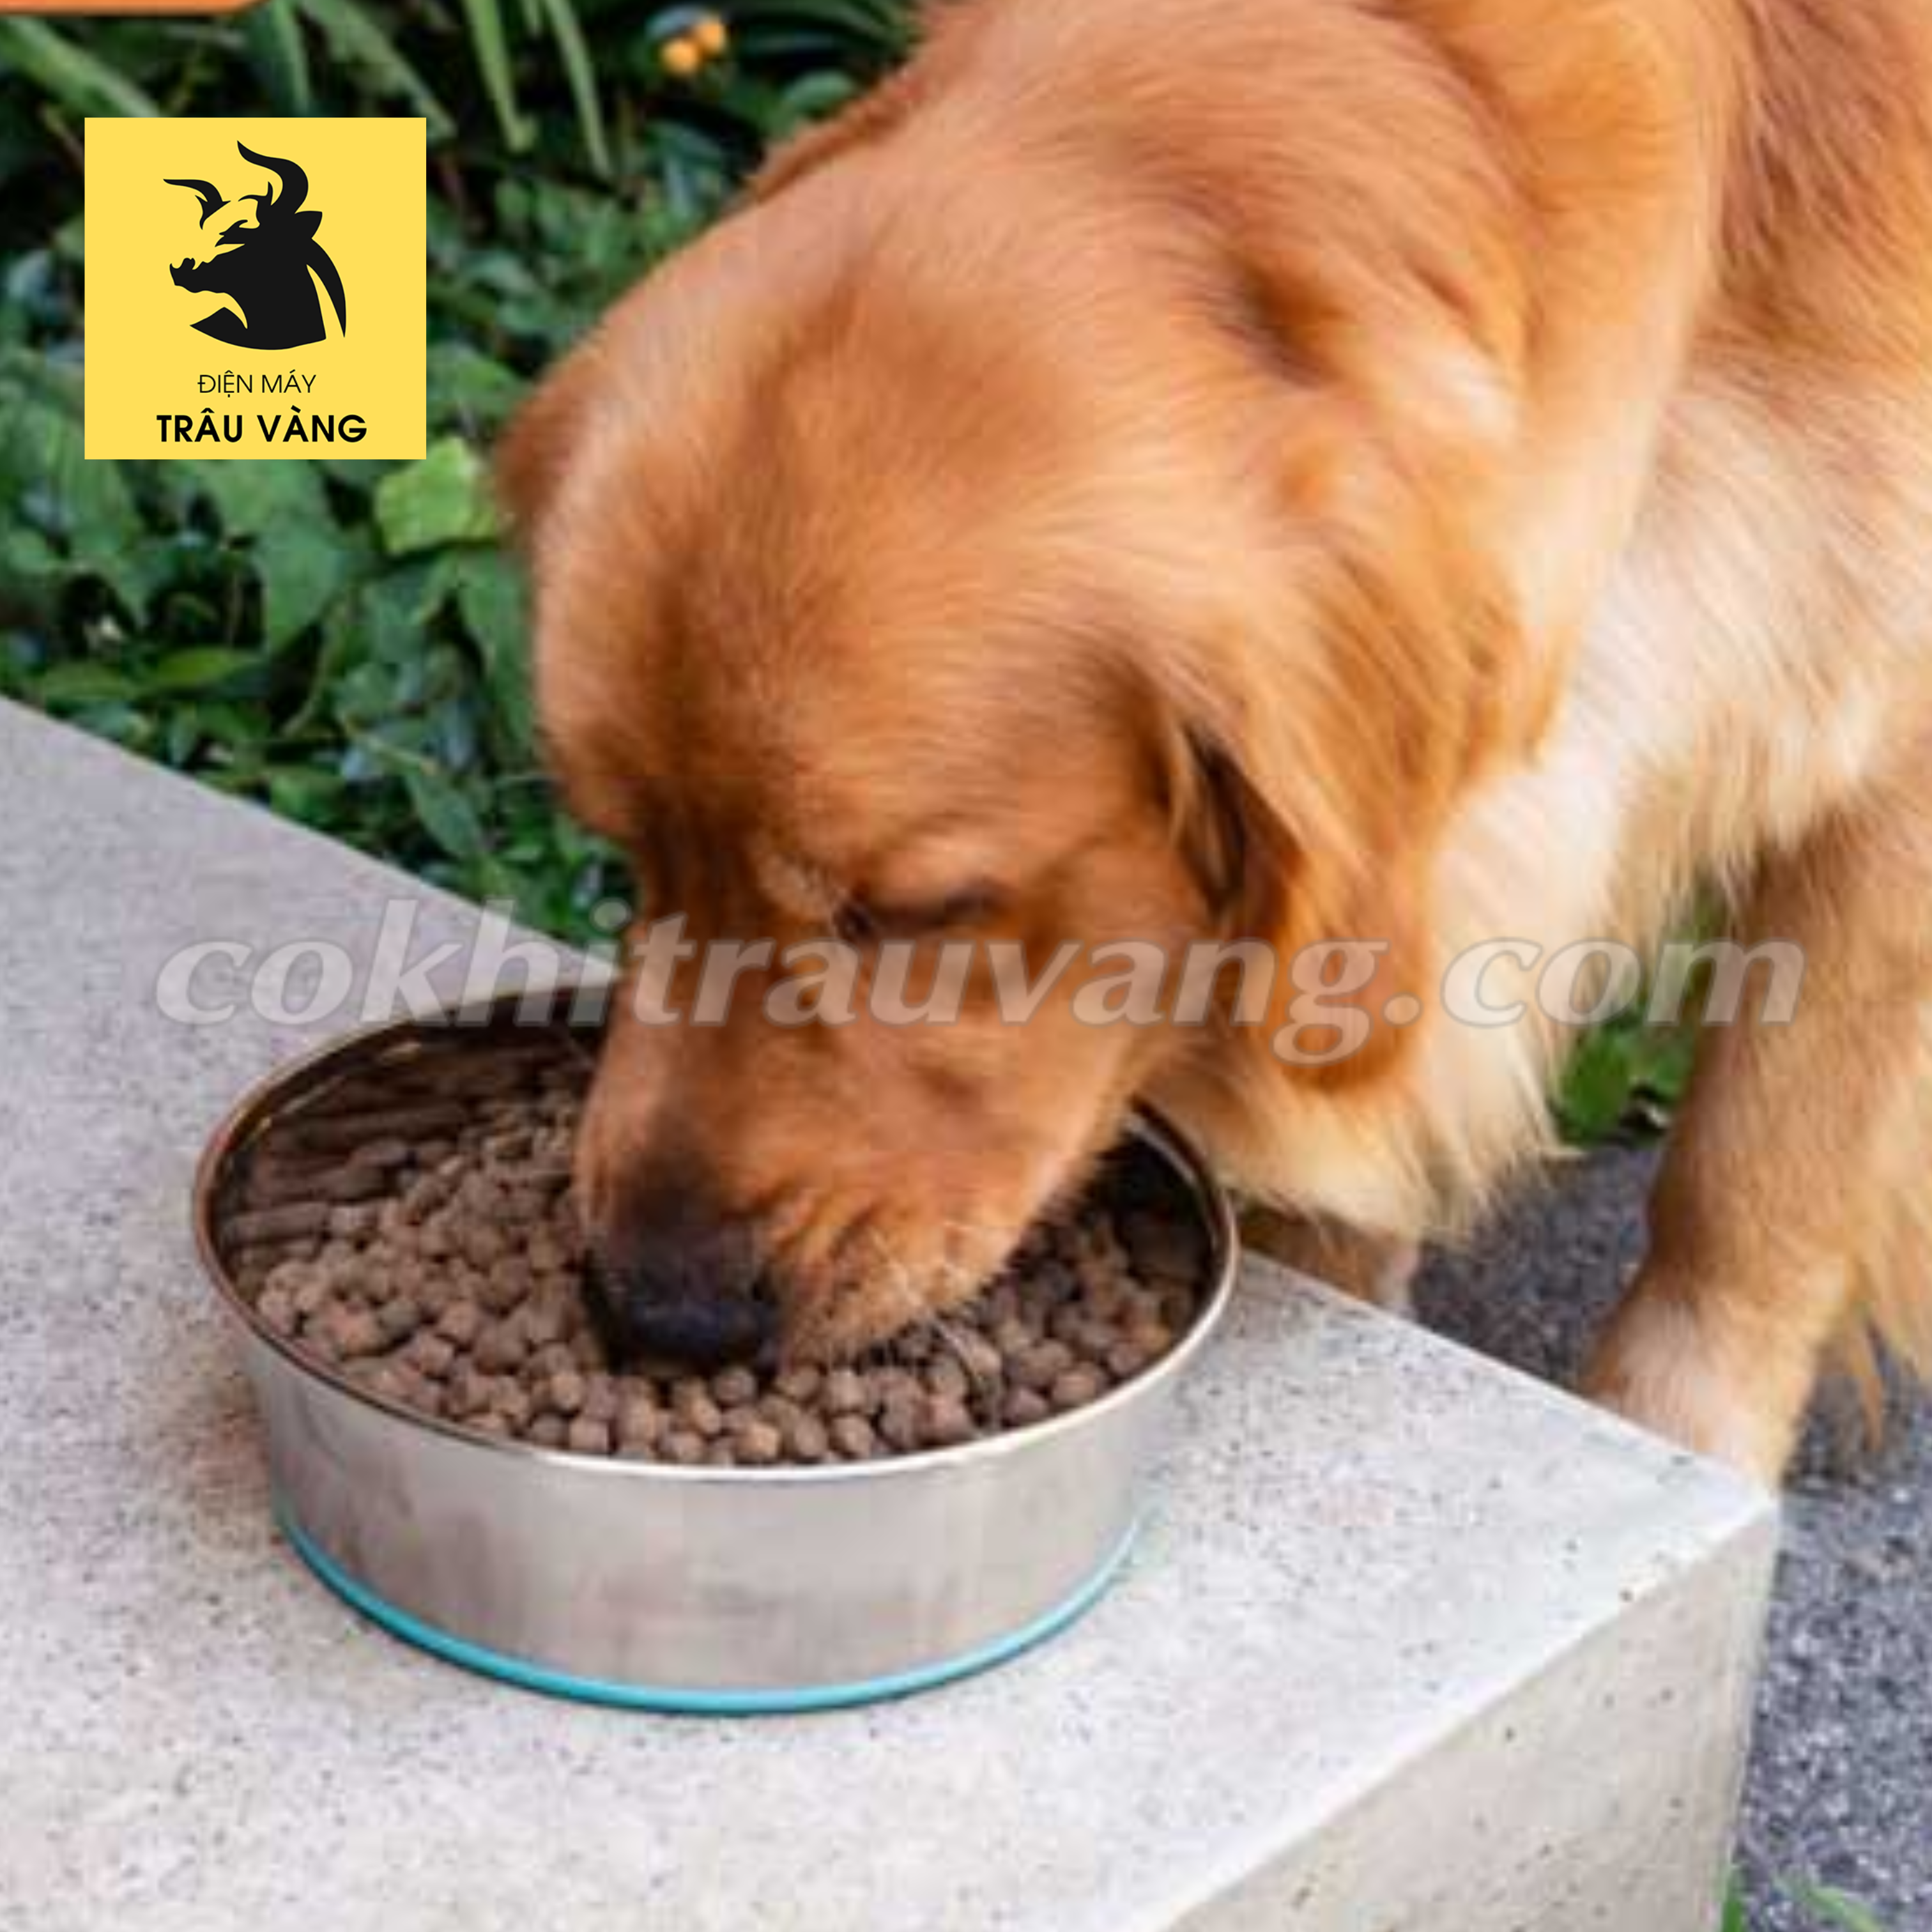 Cách làm thức ăn khô cho chó với máy đùn thức ăn viên